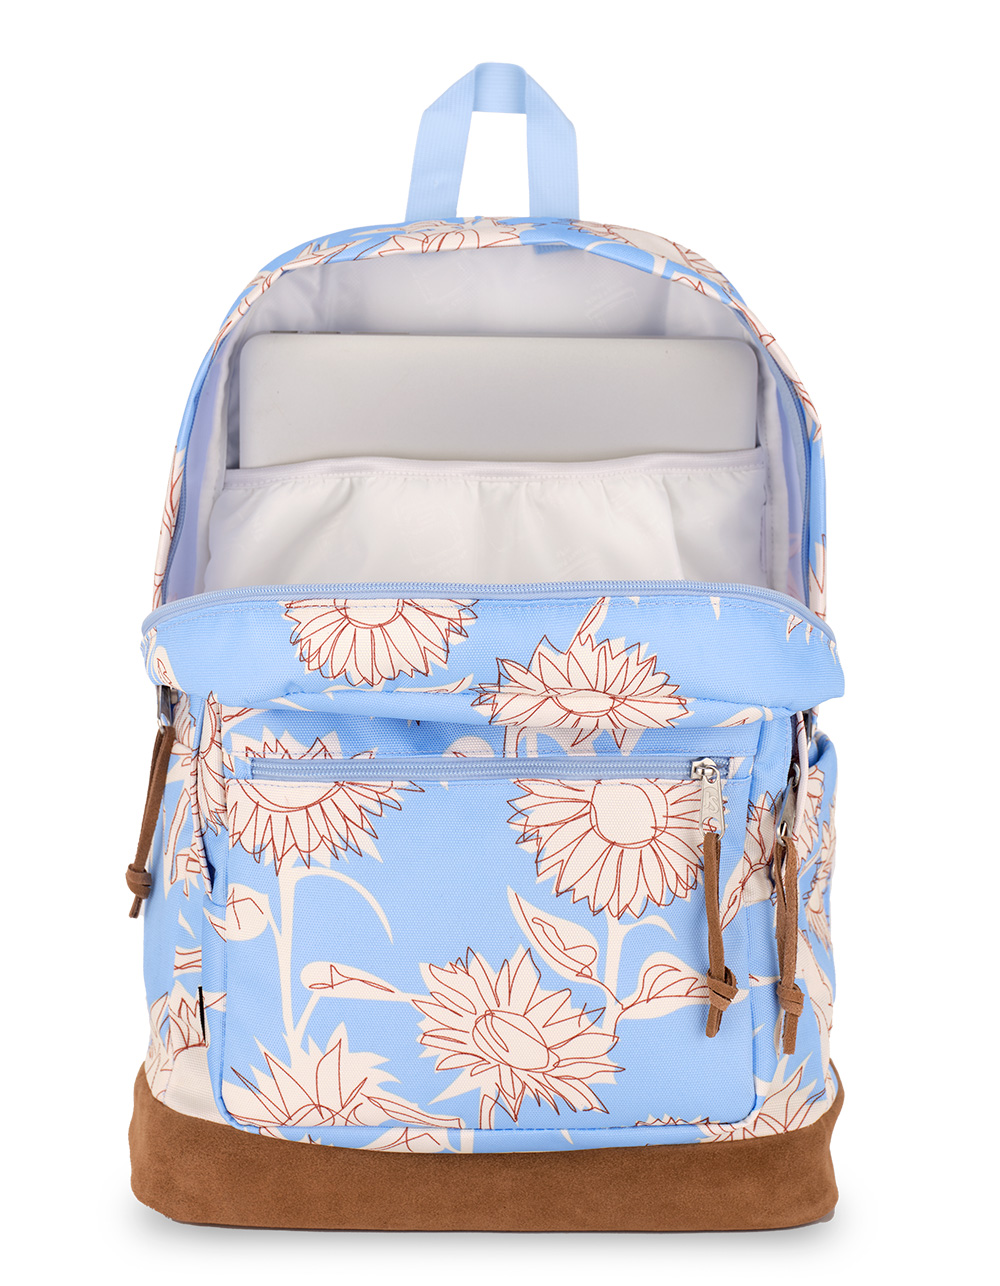 JANSPORT Right Pack Backpack - SKETCHY SUNFLOWER BLUE | Tillys